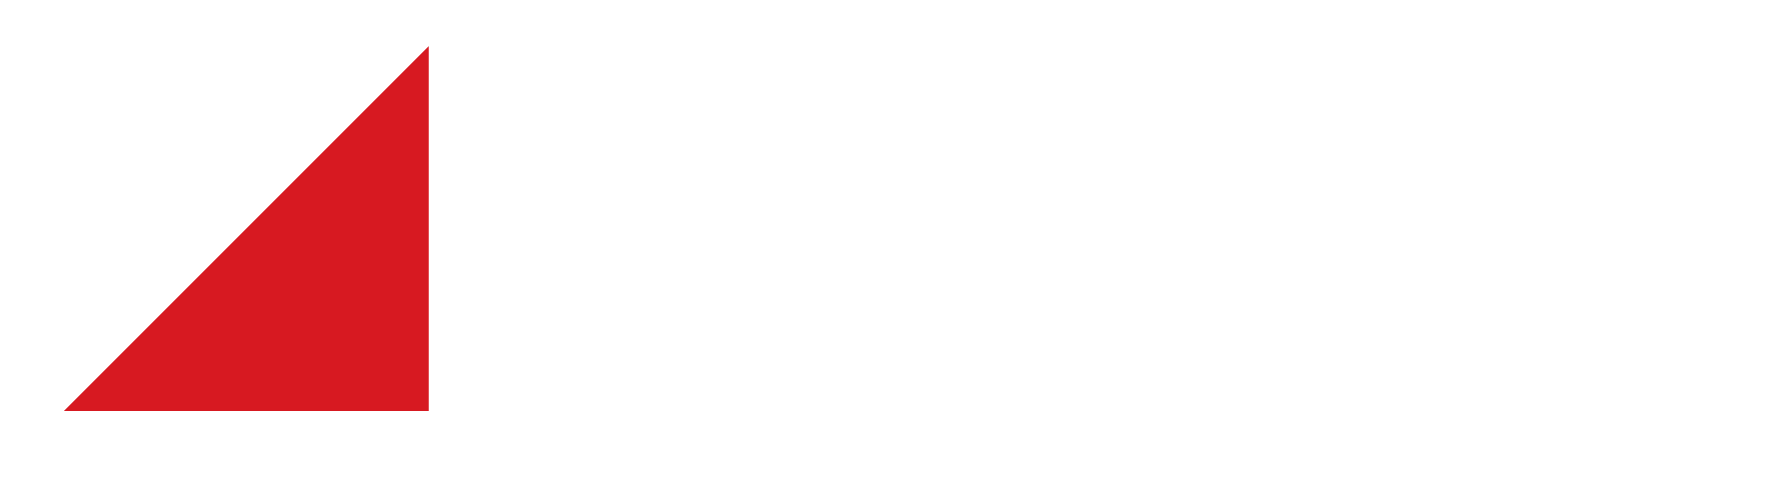 Wurzel Builders logo in white